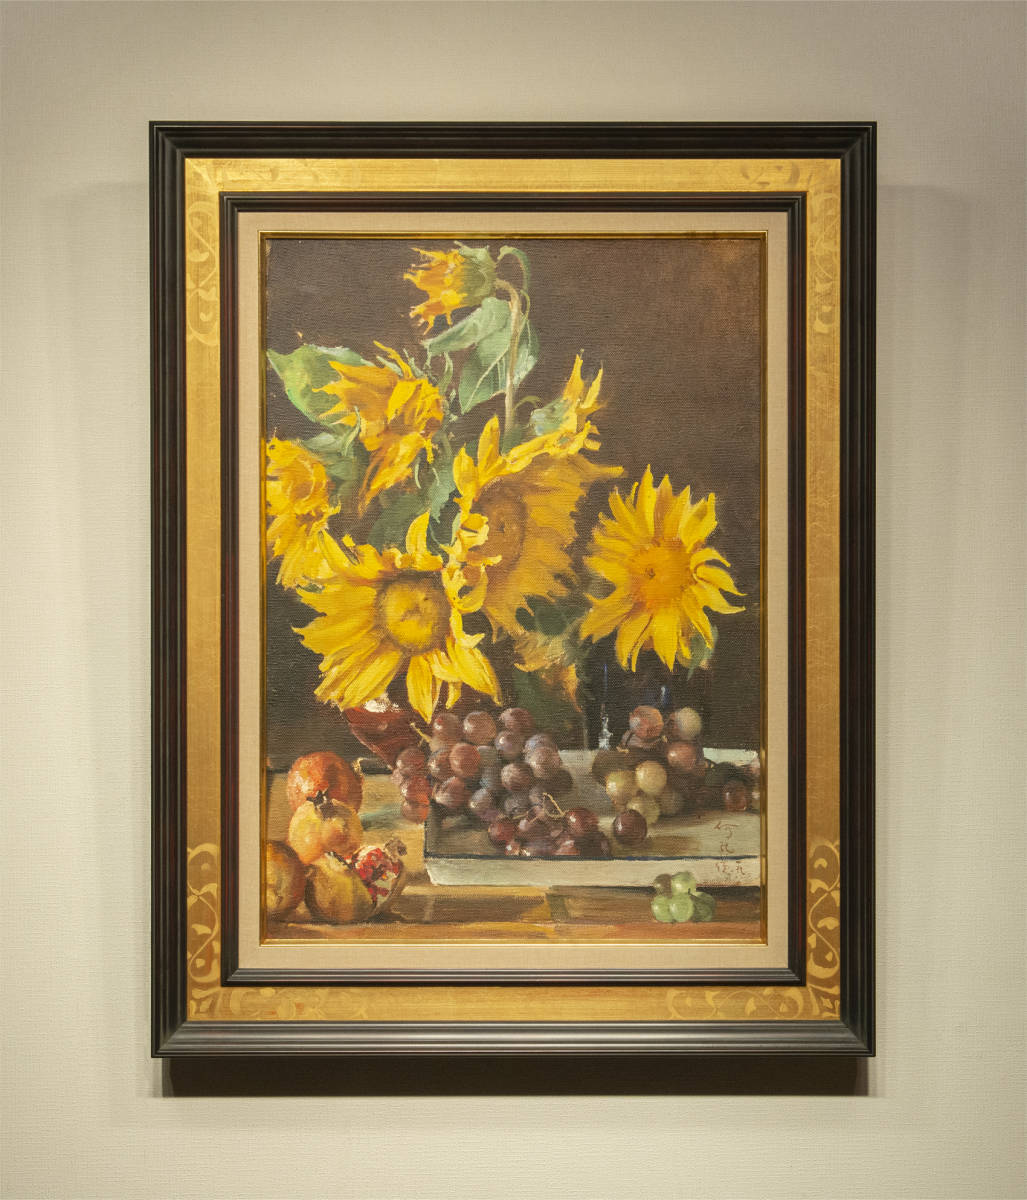 He Kongde 1989 Sunflower, Trauben-Ölgemälde aus japanischem Stein, gerahmte Authentizität, garantierte chinesische Malerei, moderne Kunst, Malerei, Ölgemälde, Stilllebenmalerei